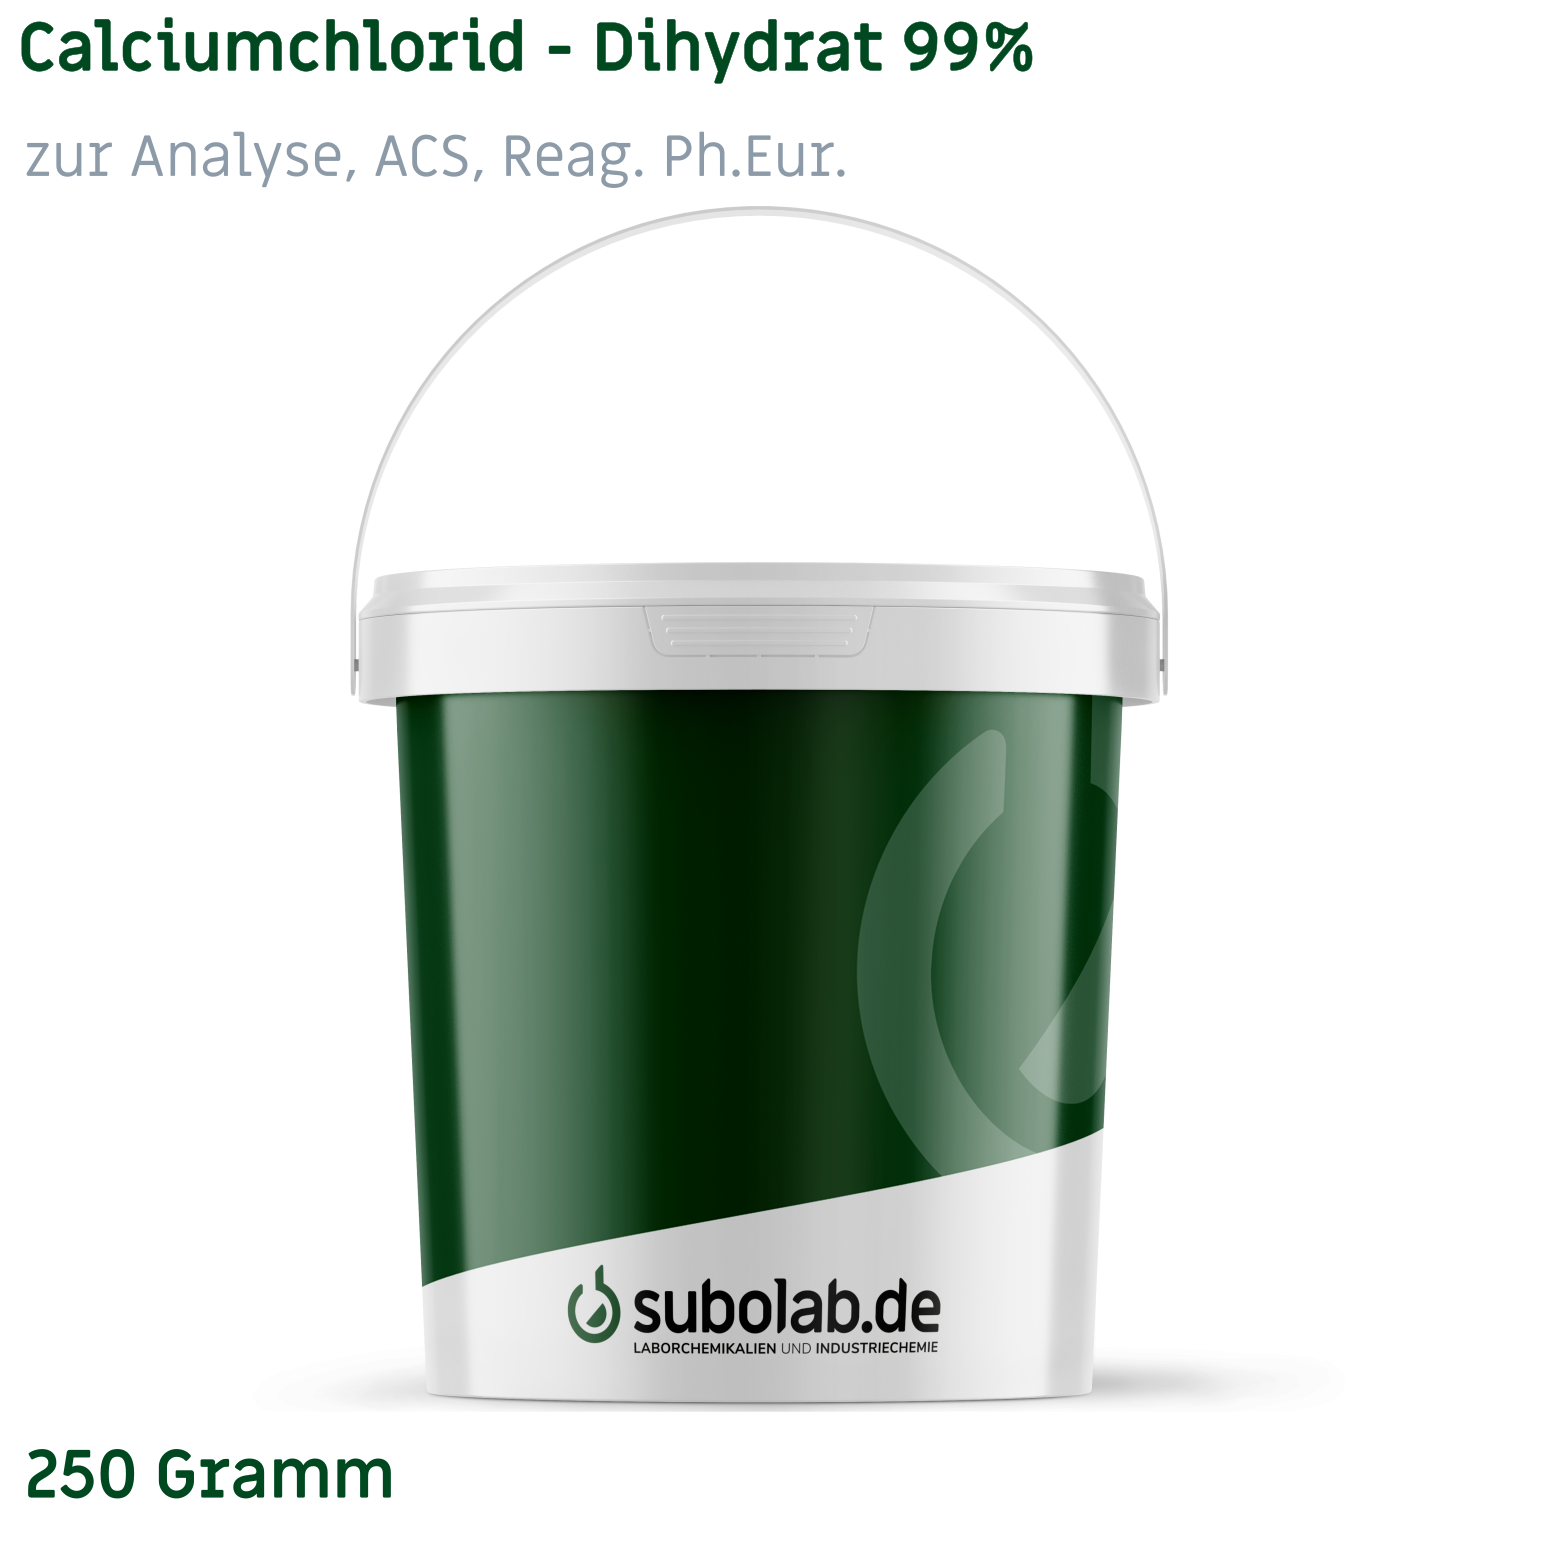 Bild von Calciumchlorid - Dihydrat 99% zur Analyse, ACS, Reag. Ph.Eur. (250 Gramm)